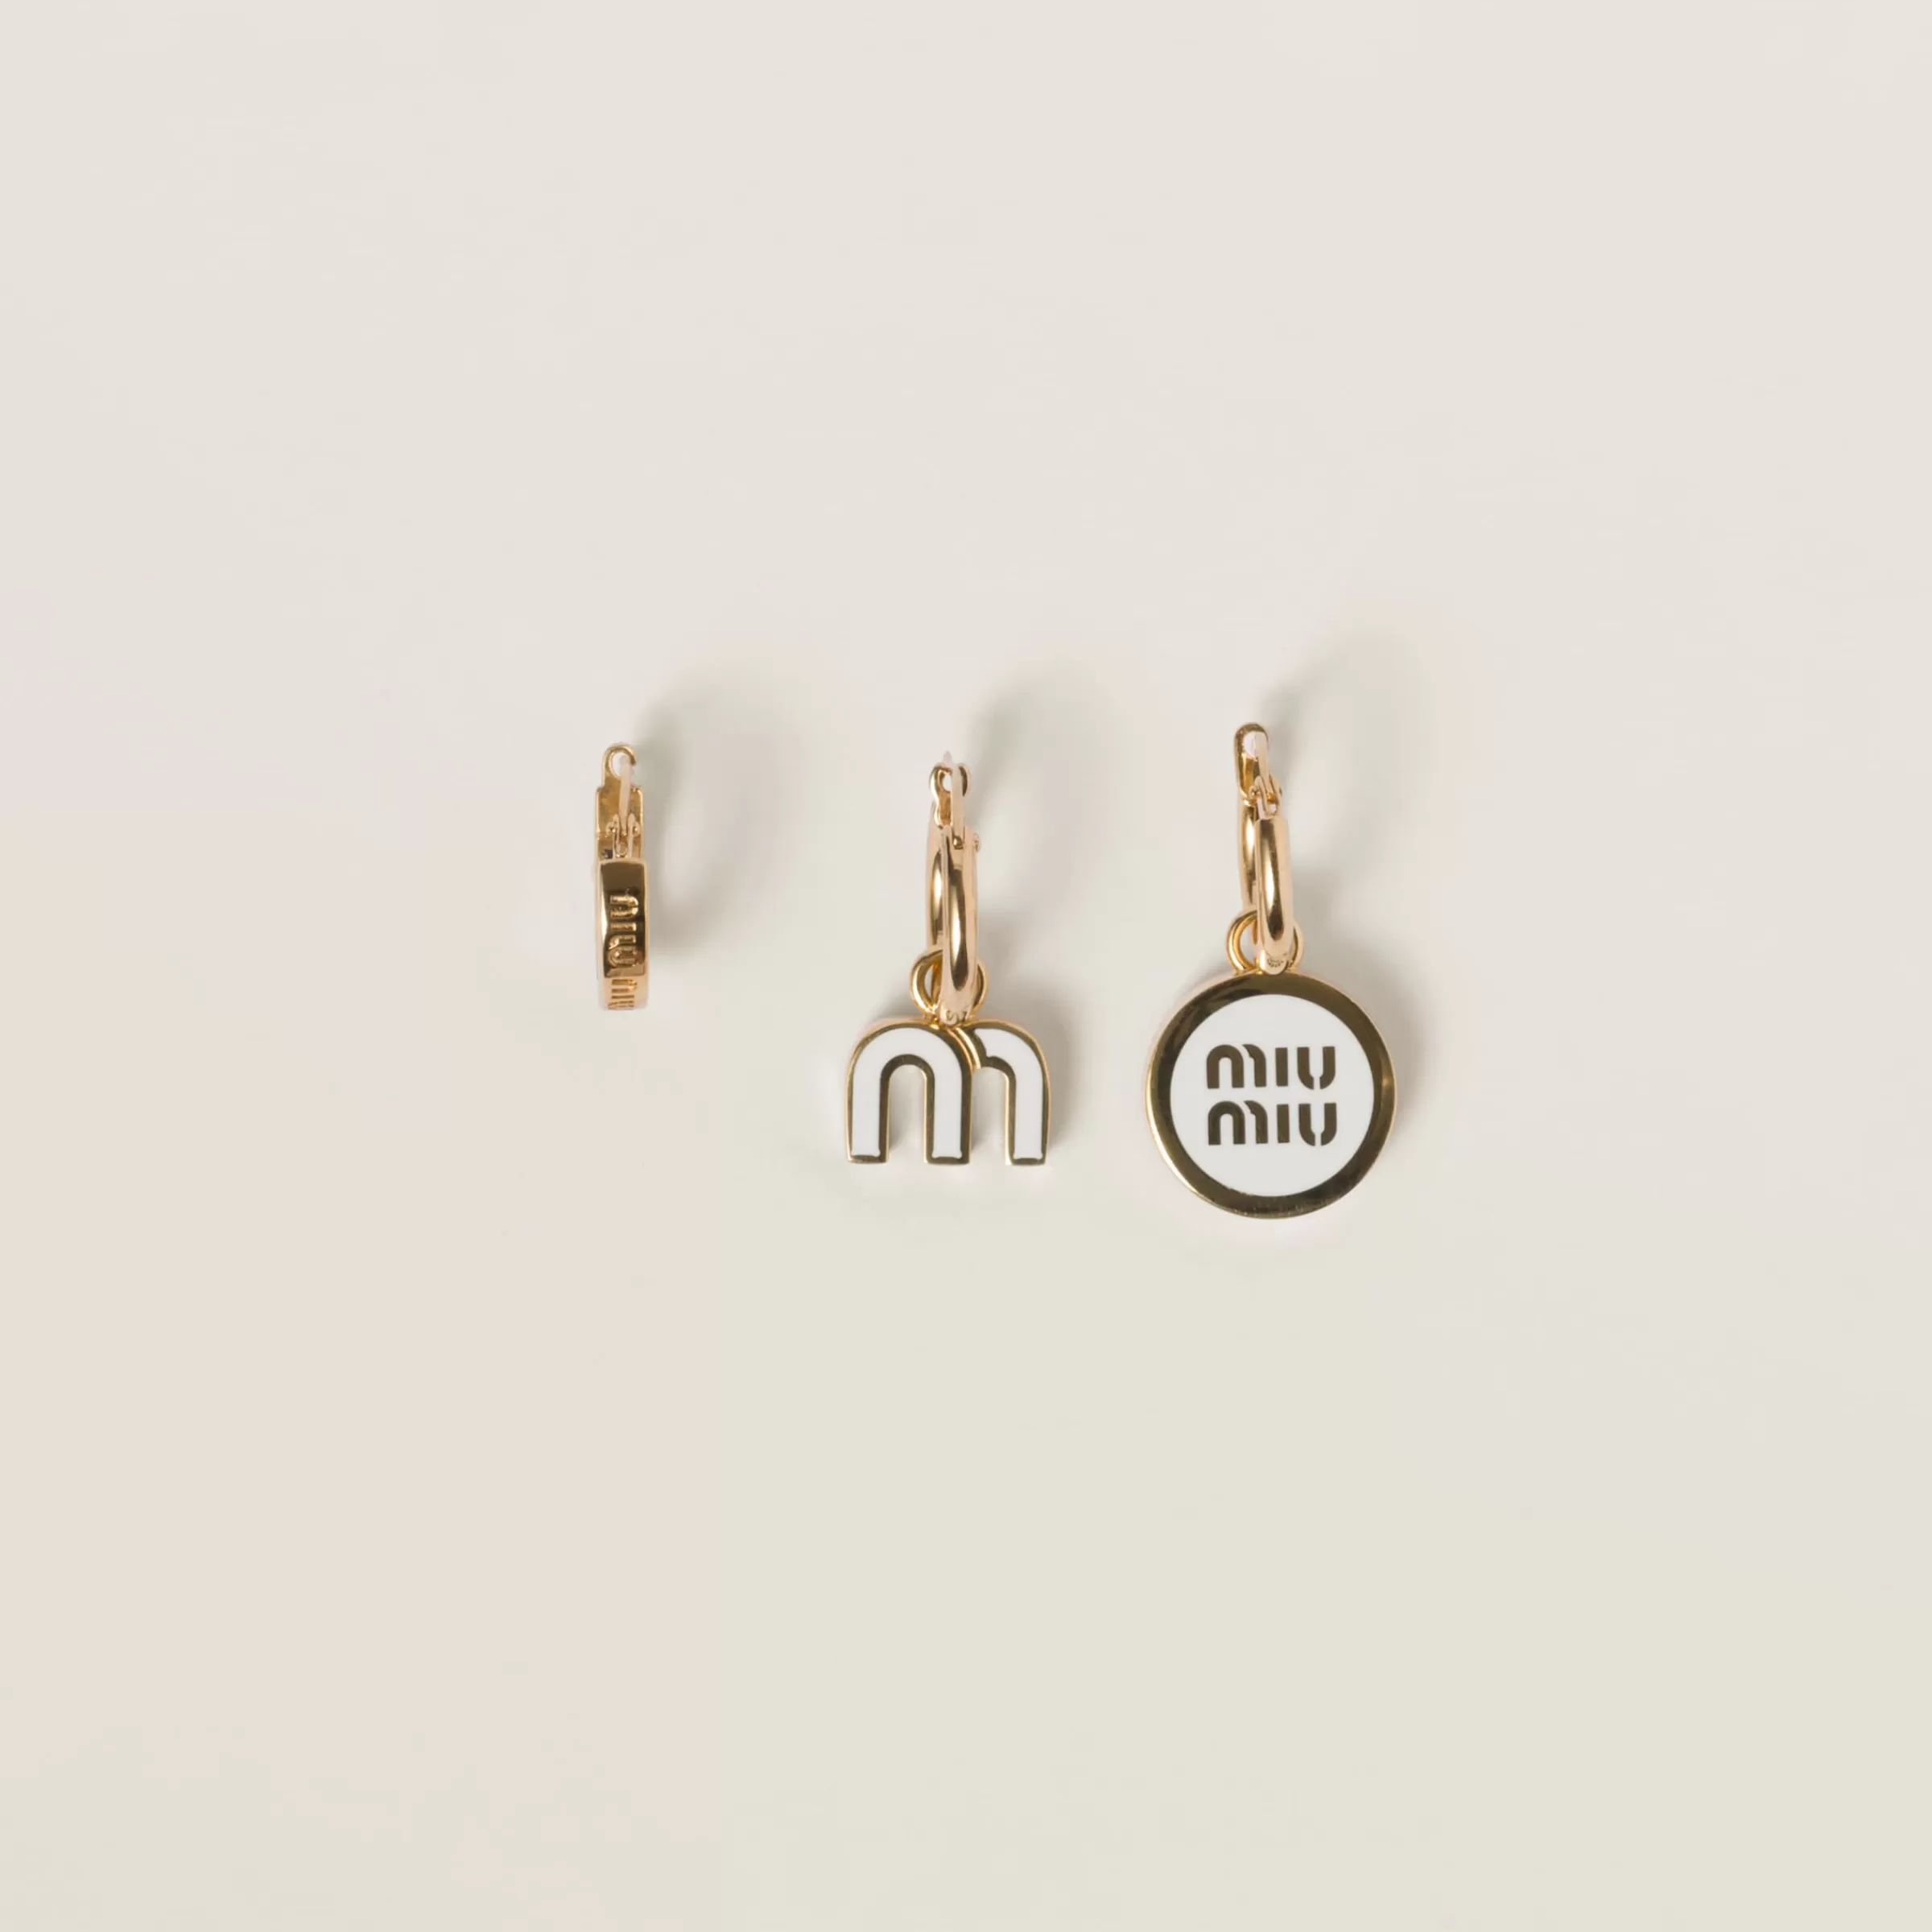 Miu Miu Set Of Enameled Metal Earrings |